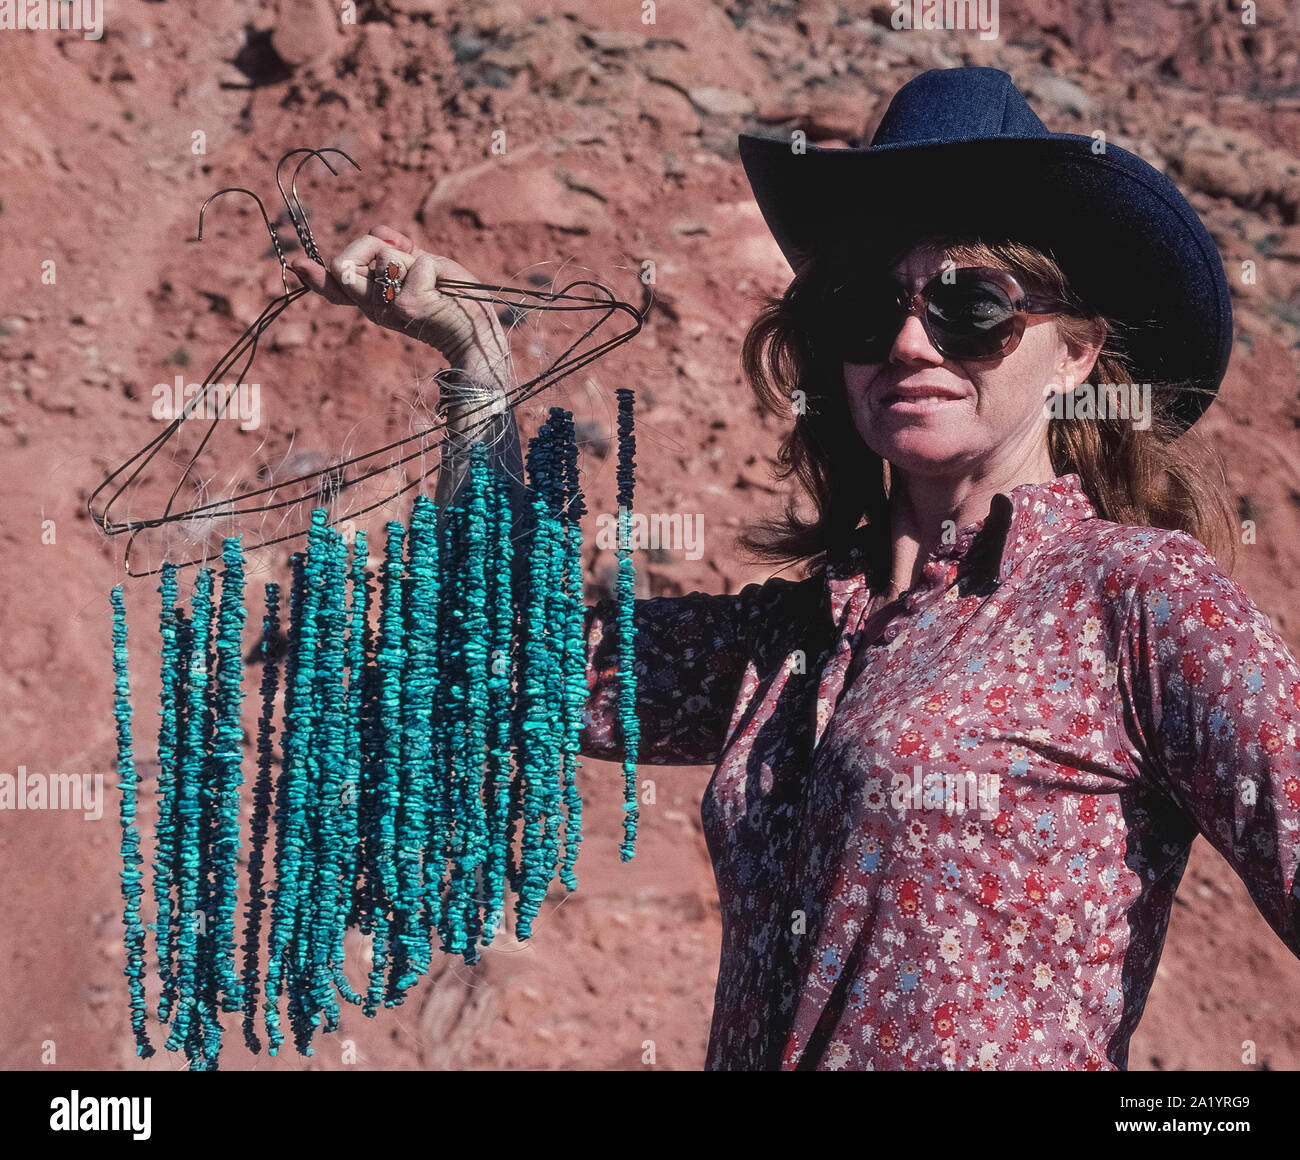 Una donna che indossa un cappello da cowboy e grandi occhiali da sole in una giornata di sole può contenere fino filo appendiabiti per visualizzare le stringhe di piccole perline di turchese che vende ai turisti che si fermano lungo una strada nel sud-ovest Arizona, Stati Uniti. L'opaco, blu-verde pietre dure è stata designata la gazzetta ufficiale dello Stato la gemma della Arizona nel 1974. Gli indiani Navajo e altri nativi americani degli STATI UNITI A sud-ovest sono famose per l'utilizzo di turchese per creare gioielli unici e alla moda di articoli che spaziano da collane, bracciali e orecchini a watchbands e fibbie della cintura di sicurezza posteriore. Foto Stock